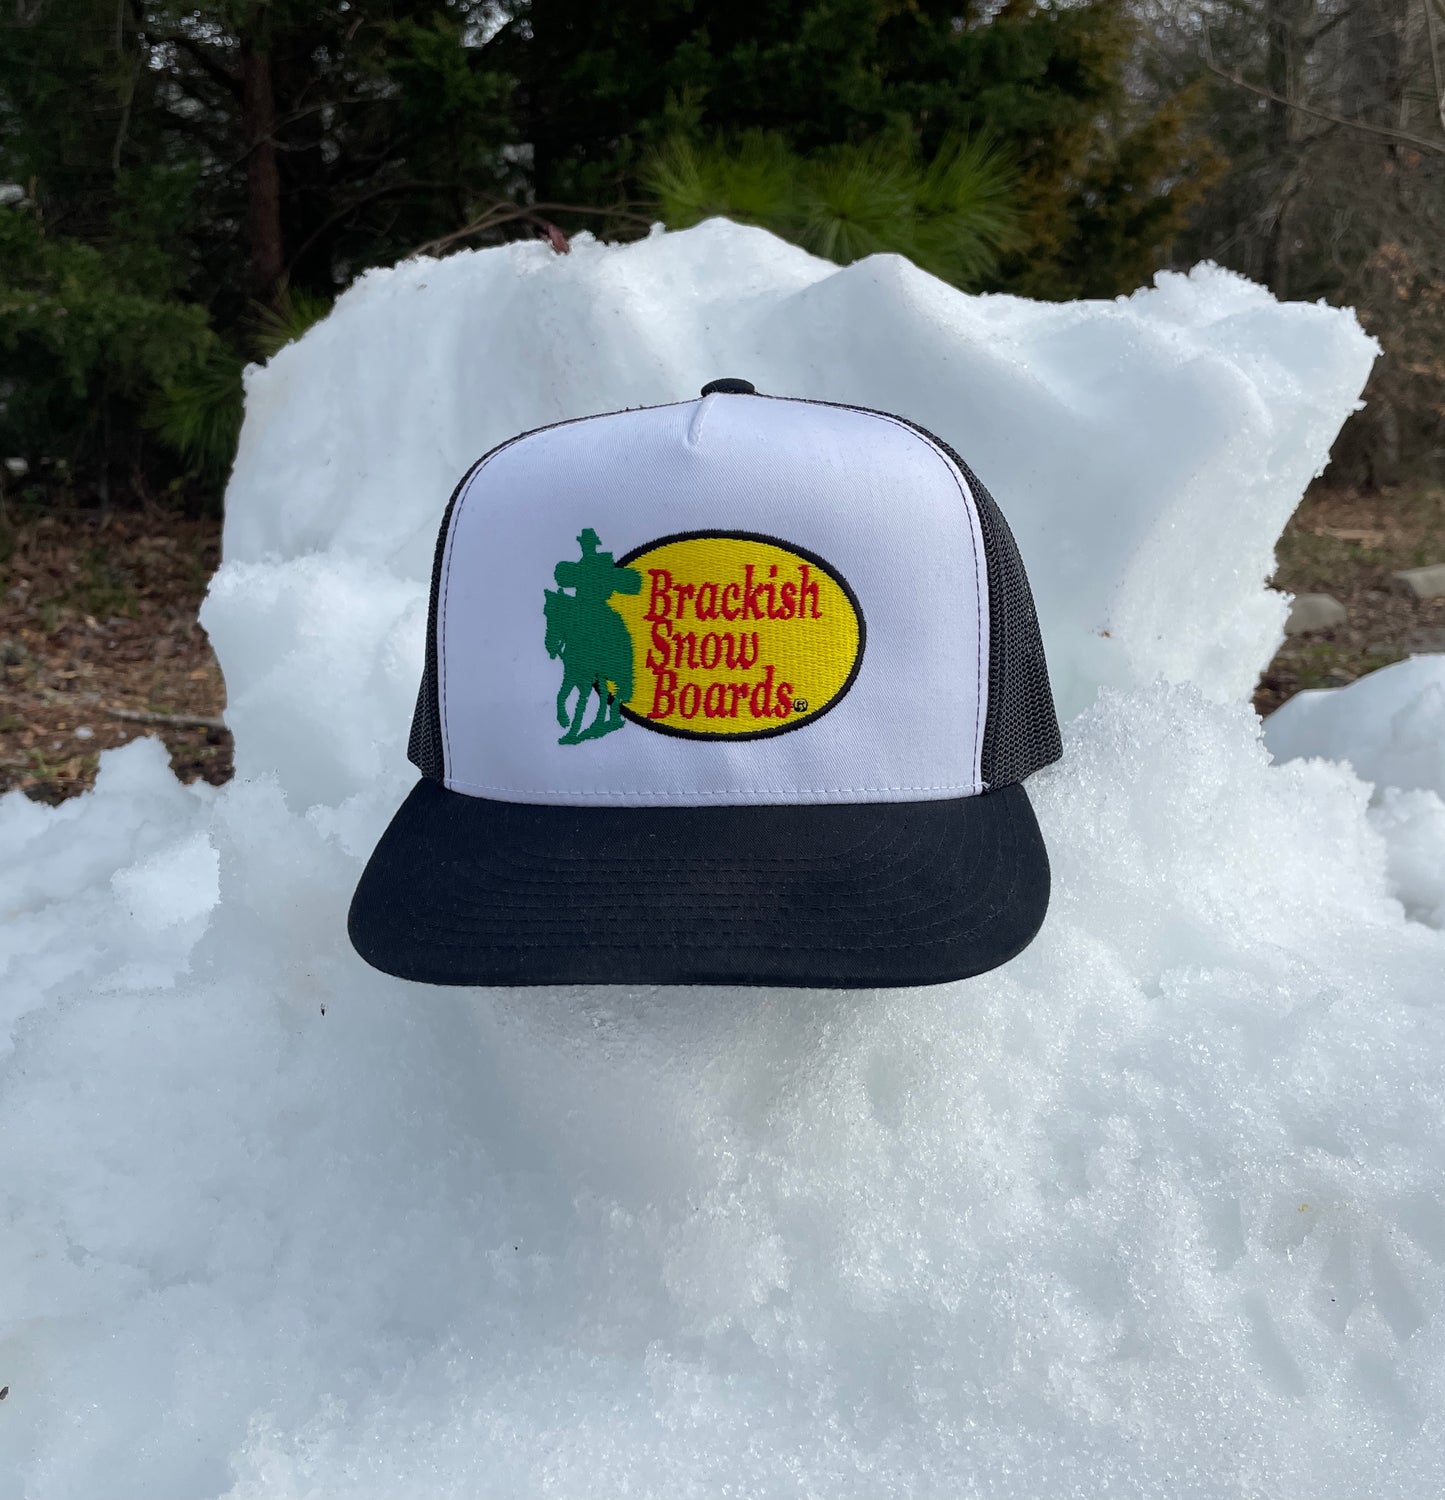 Brackish Snow Boards Trucker Hat